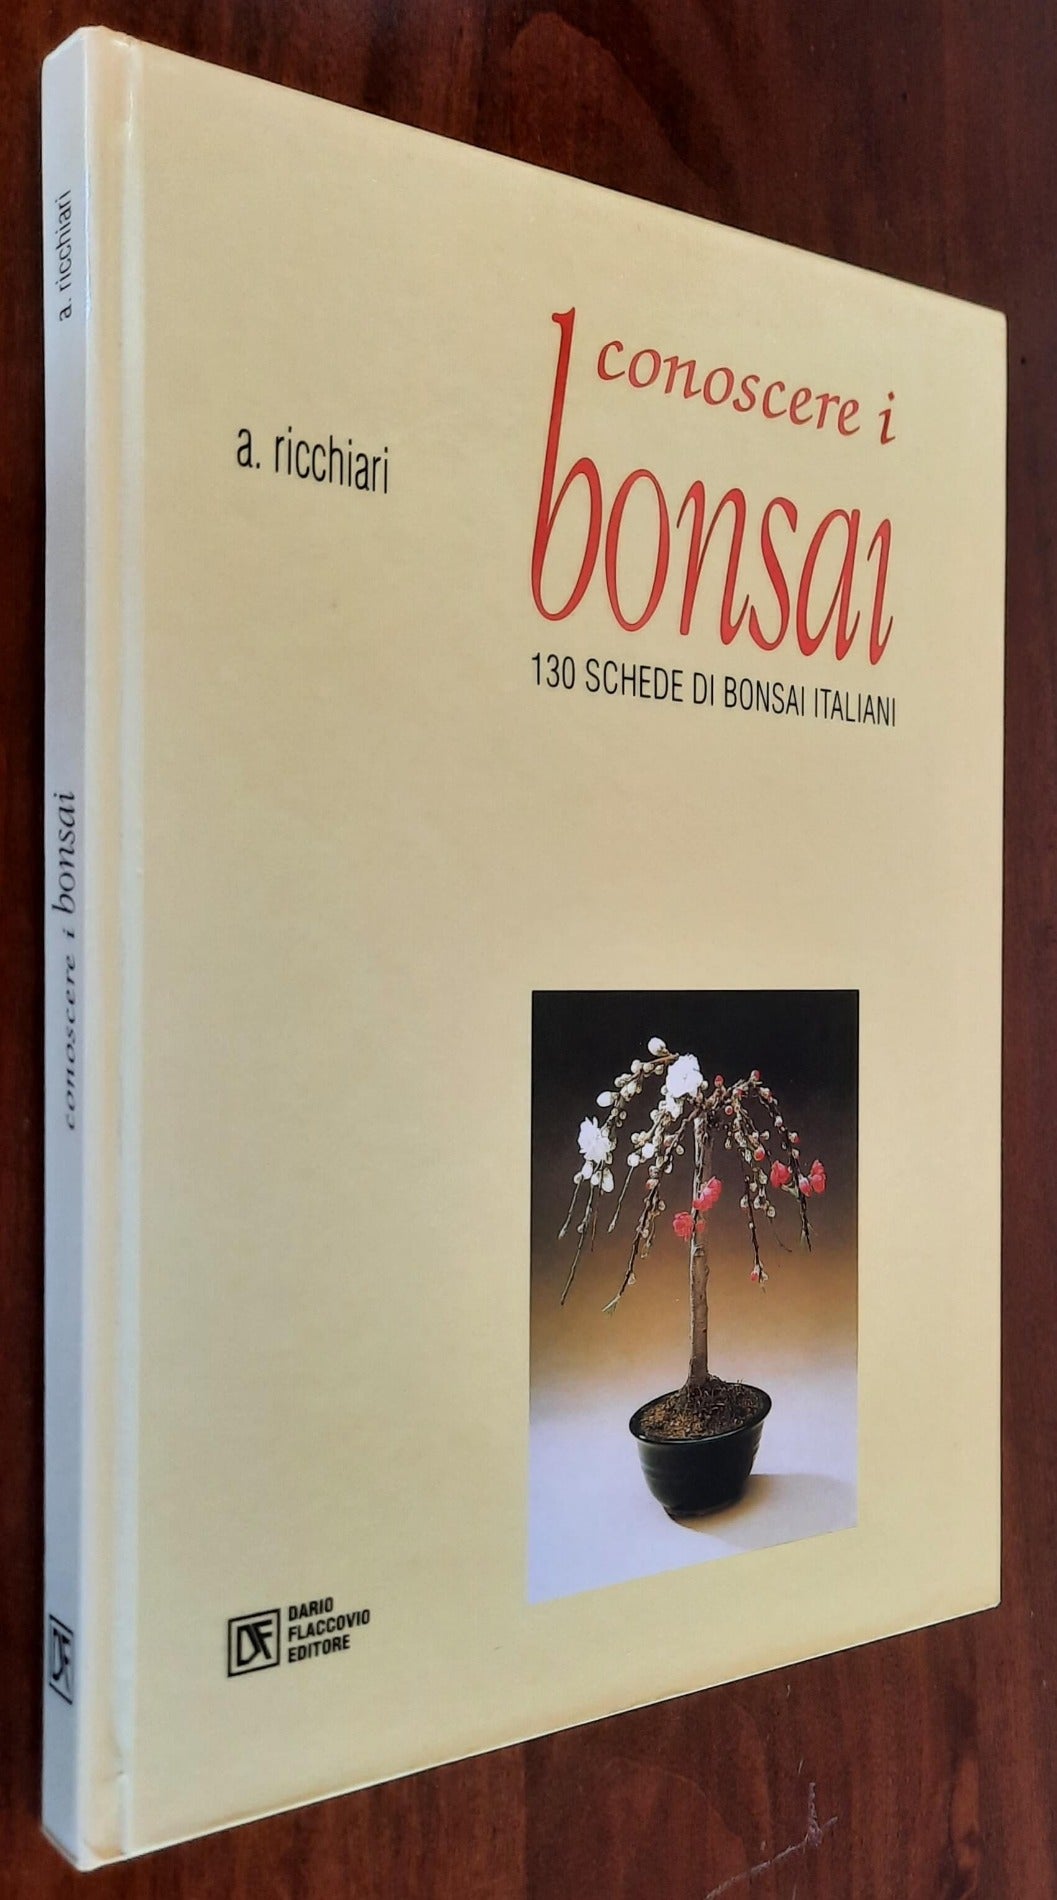 Conoscere i bonsai. 130 schede di bonsai italiani